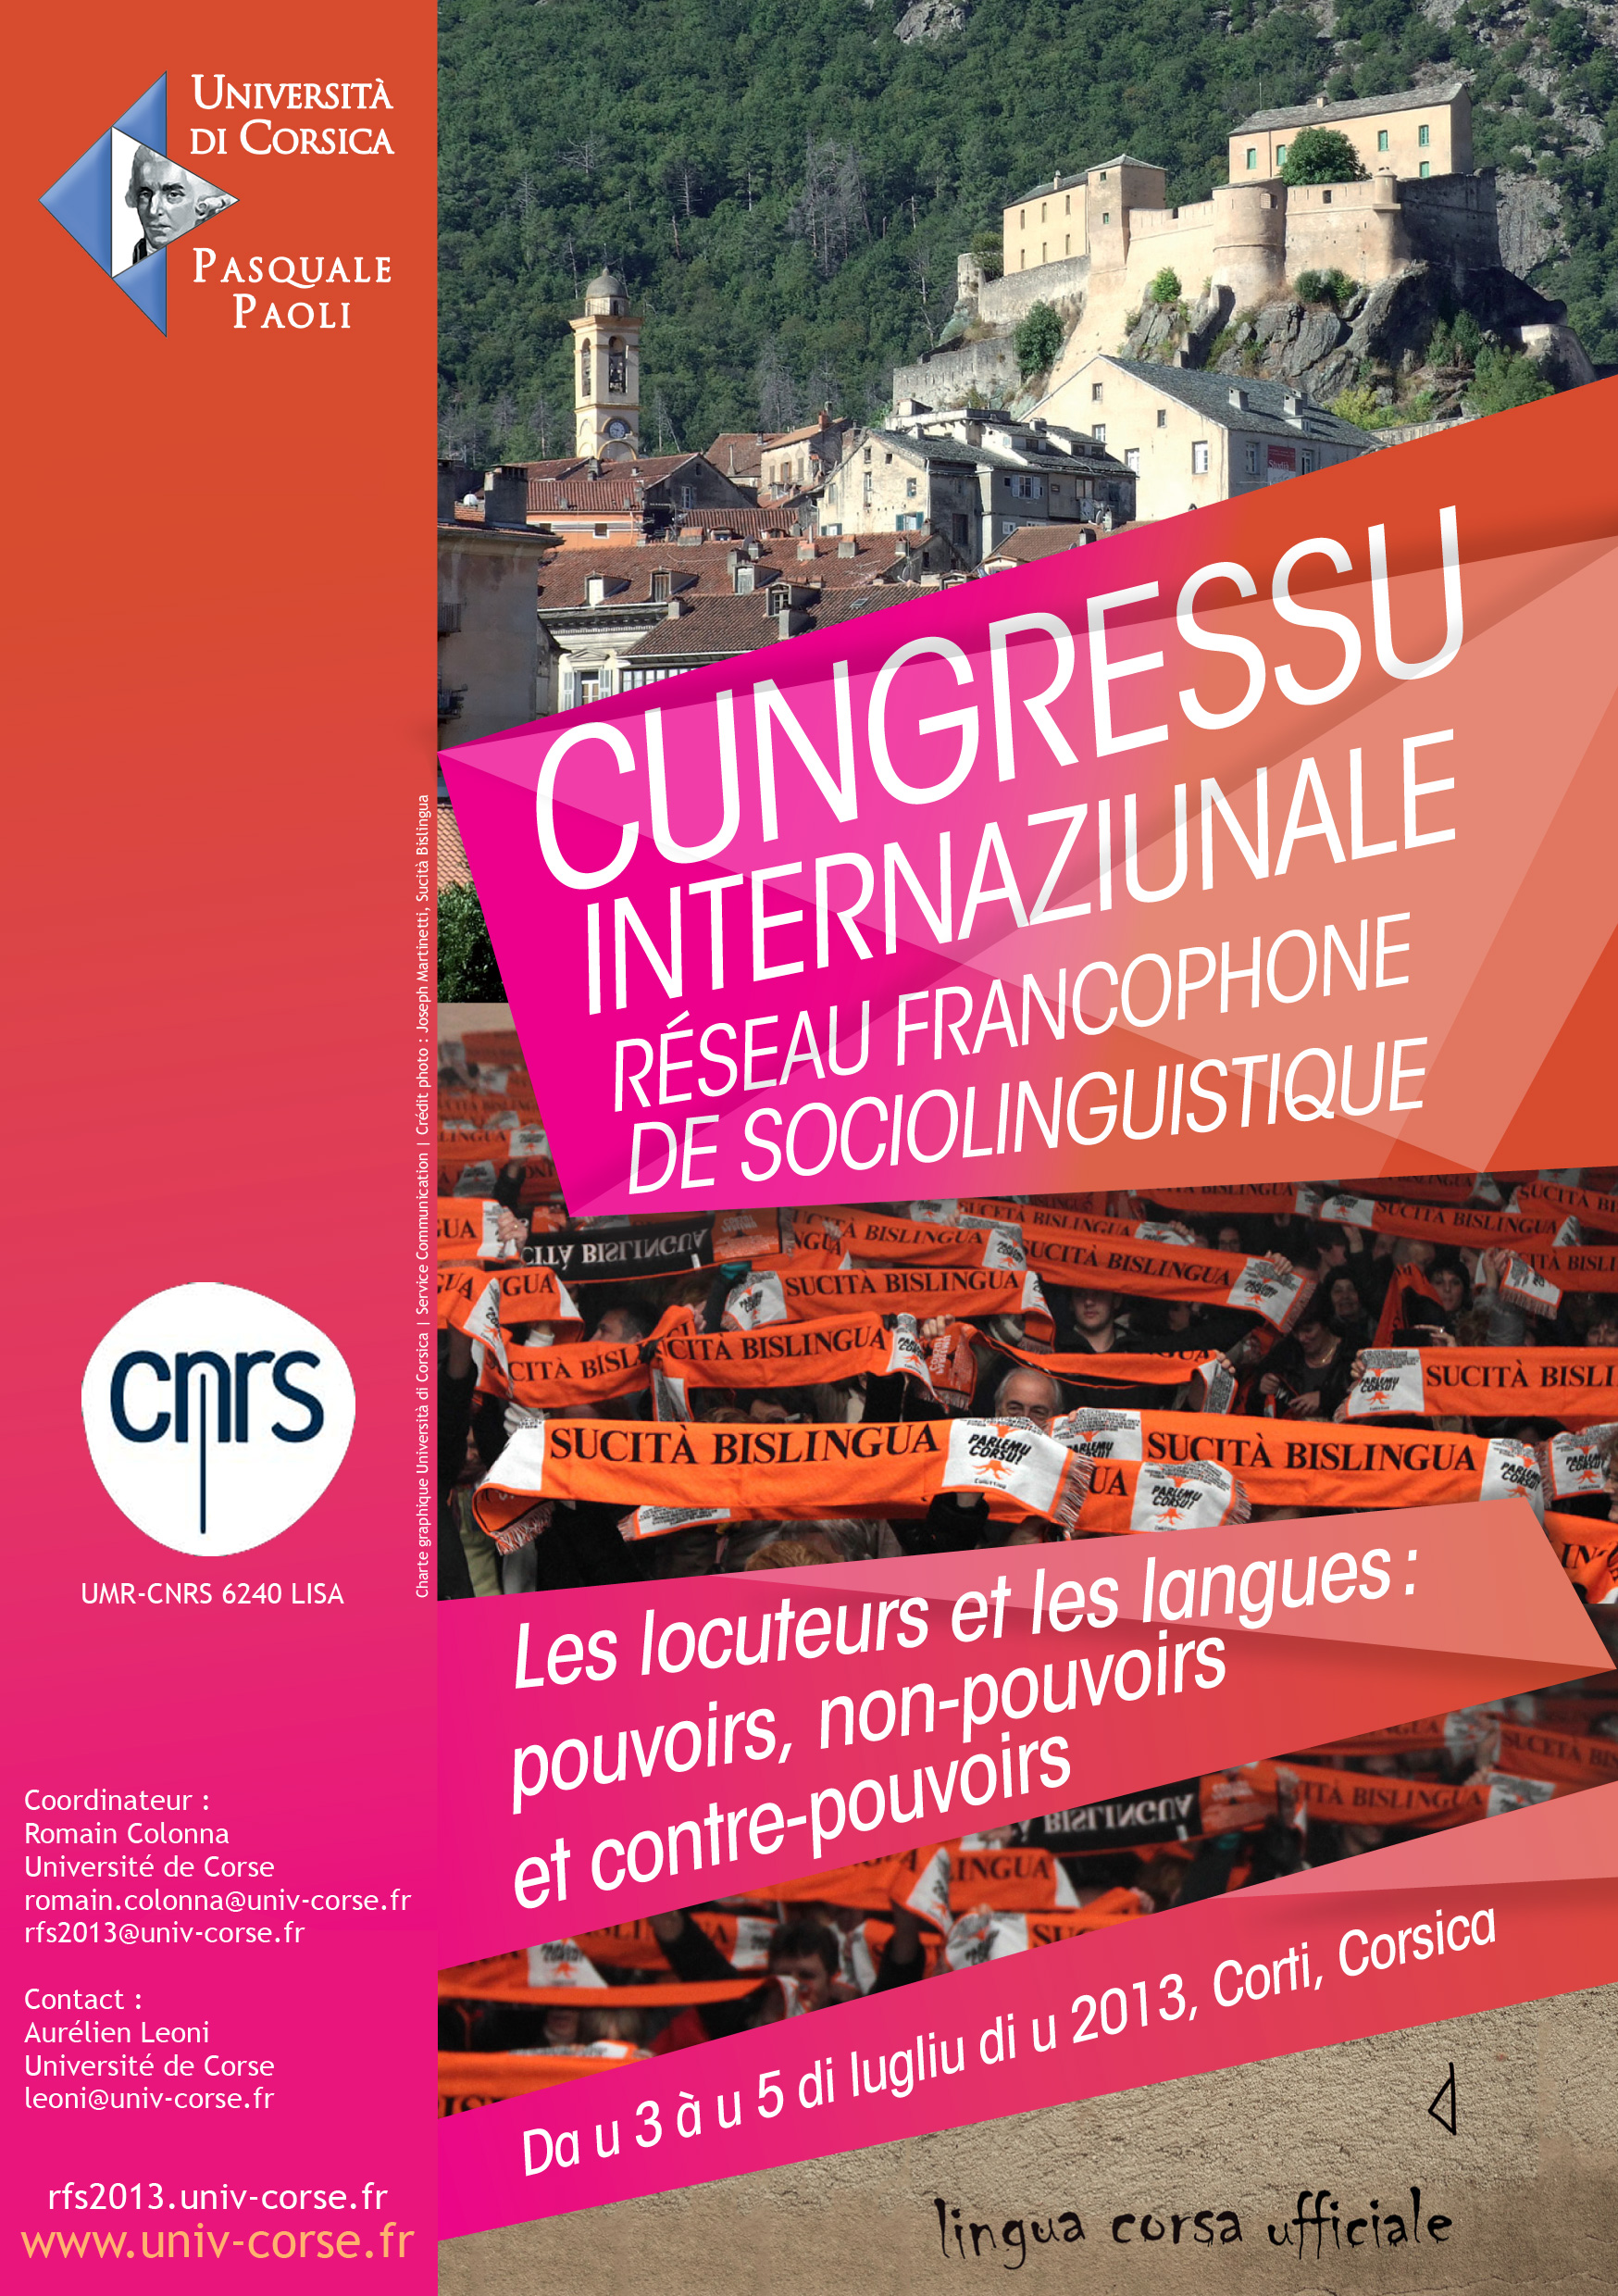 >Cungressu internaziunale Réseau francophone de sociolinguistique - Les locuteurs et les langues, pouvoirs, non pouvoirs et contre-pouvoirs